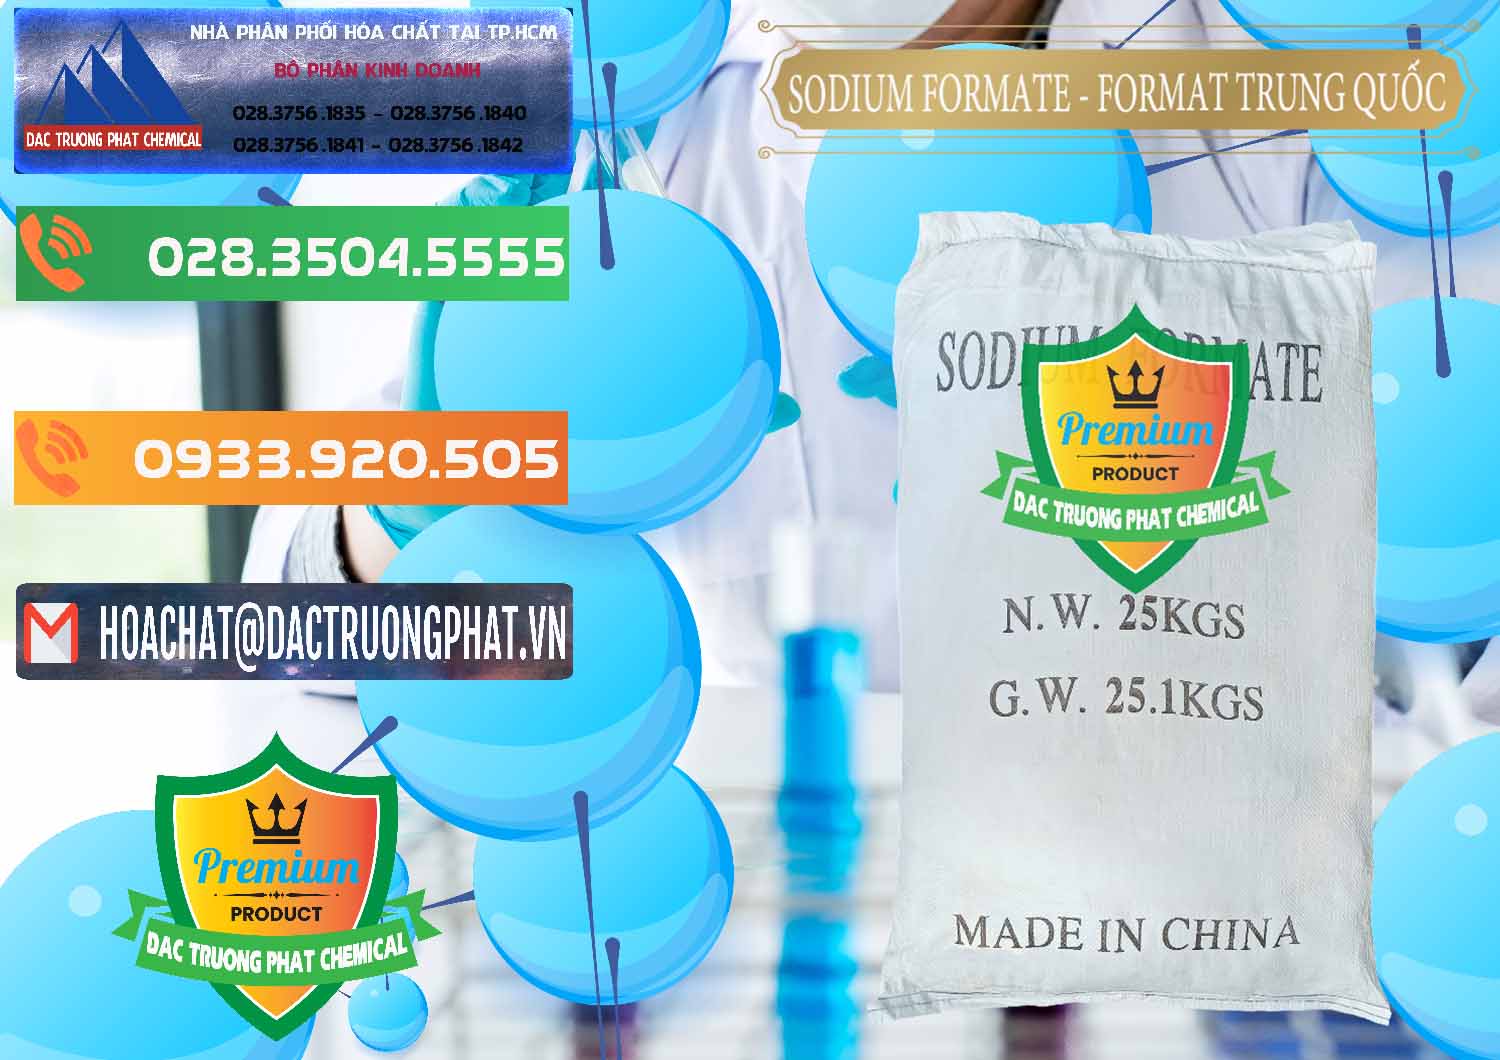 Đơn vị chuyên bán và cung cấp Sodium Formate - Natri Format Trung Quốc China - 0142 - Đơn vị cung cấp _ kinh doanh hóa chất tại TP.HCM - hoachatxulynuoc.com.vn